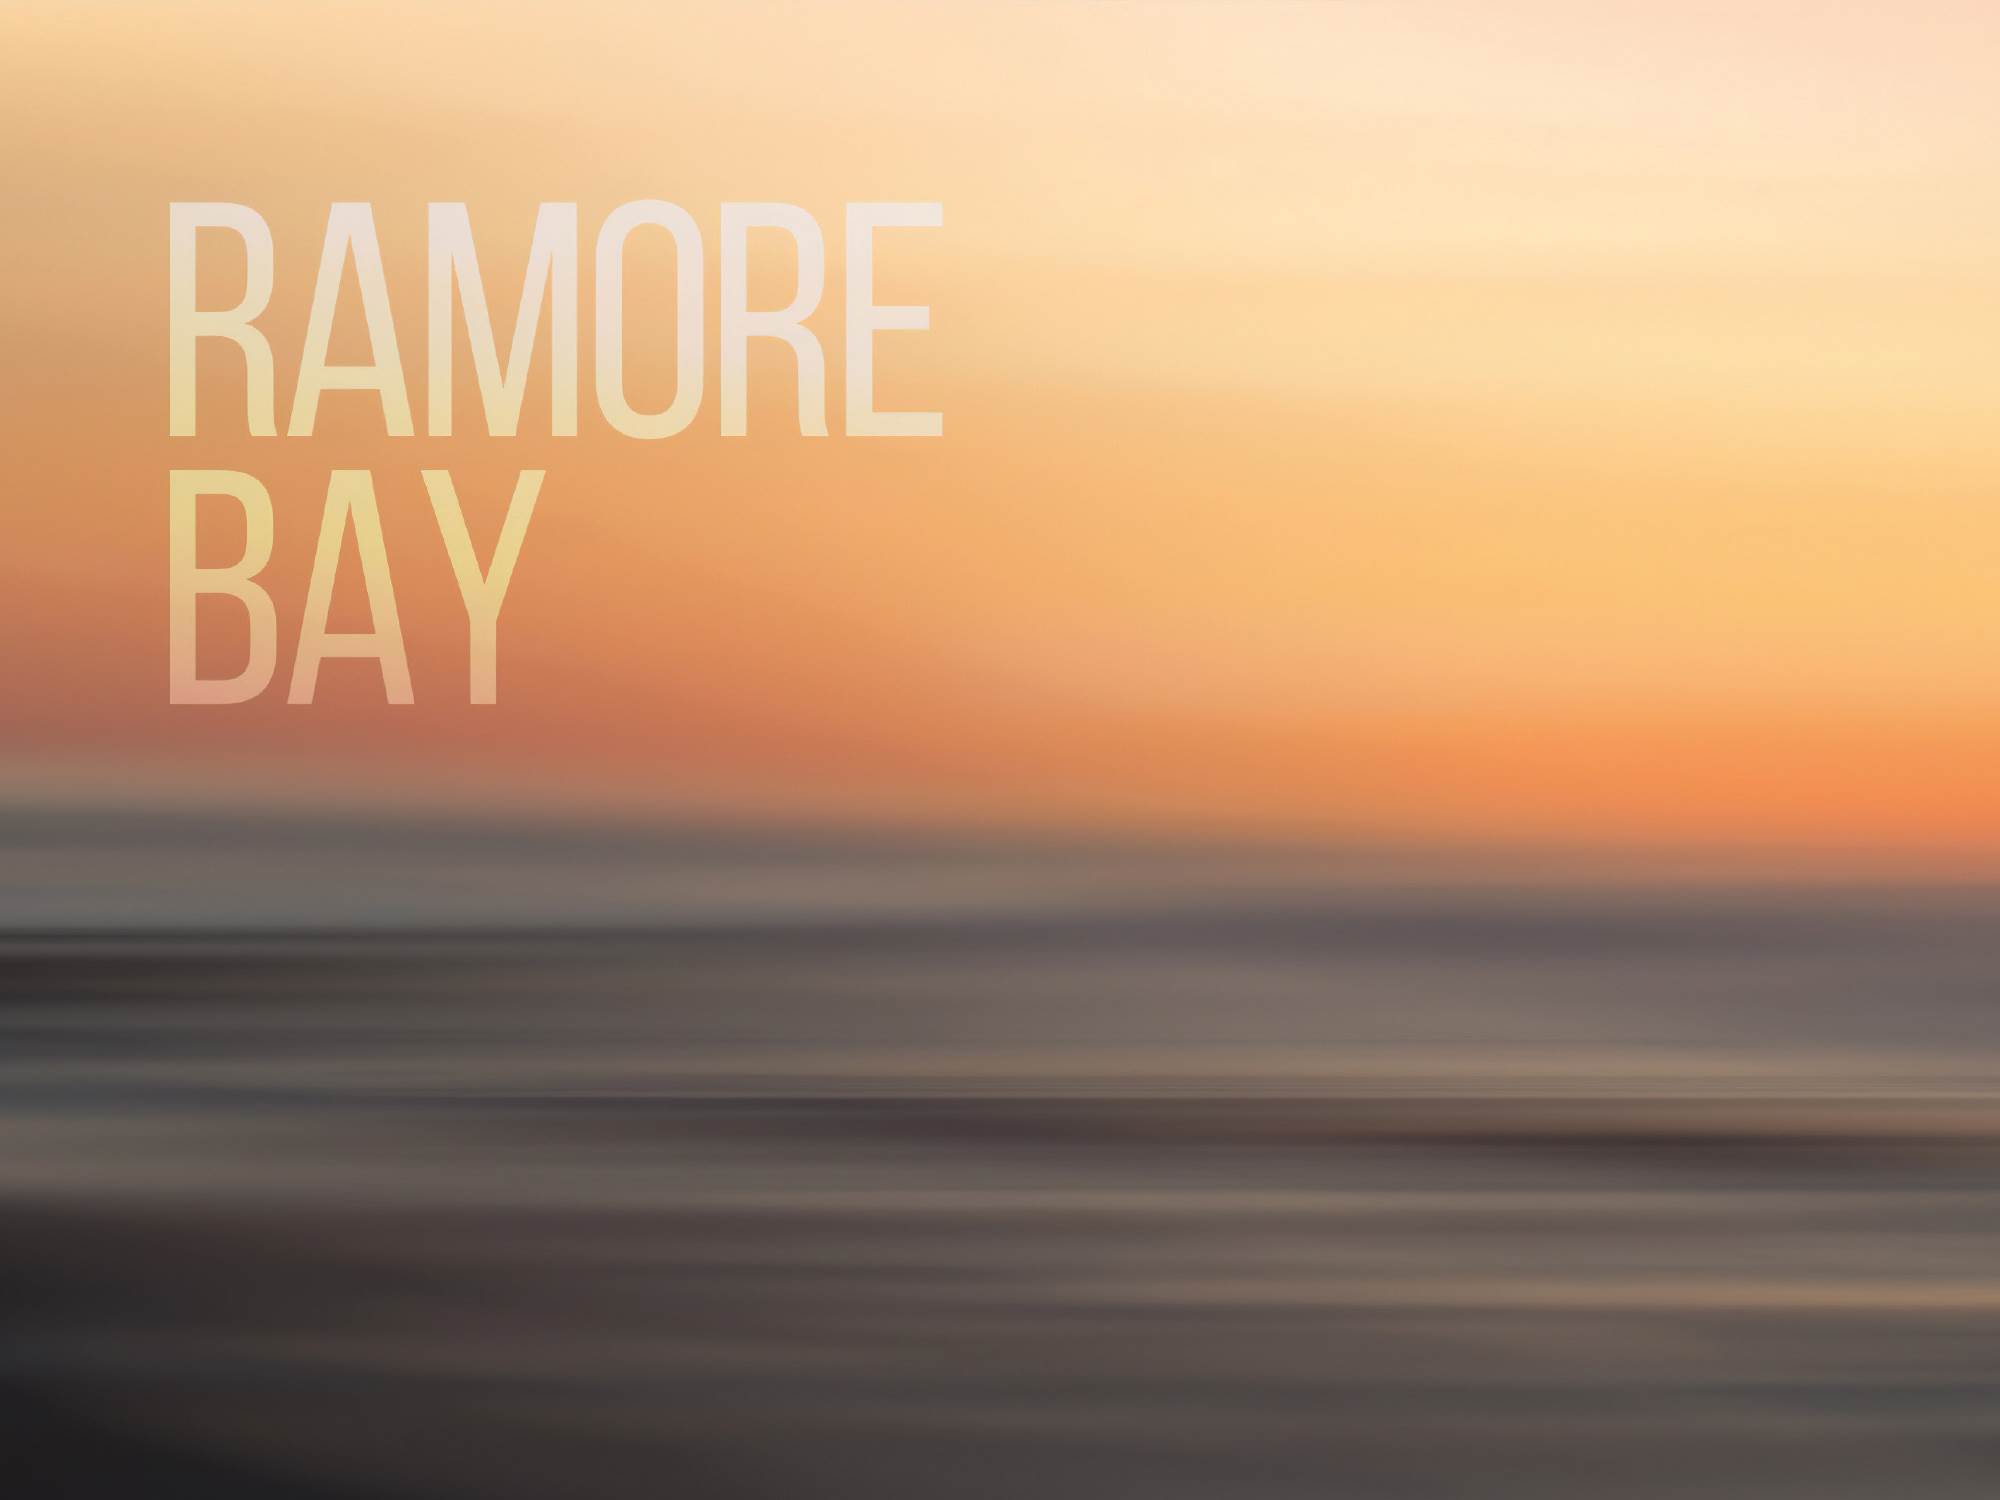 9 Ramore Bay